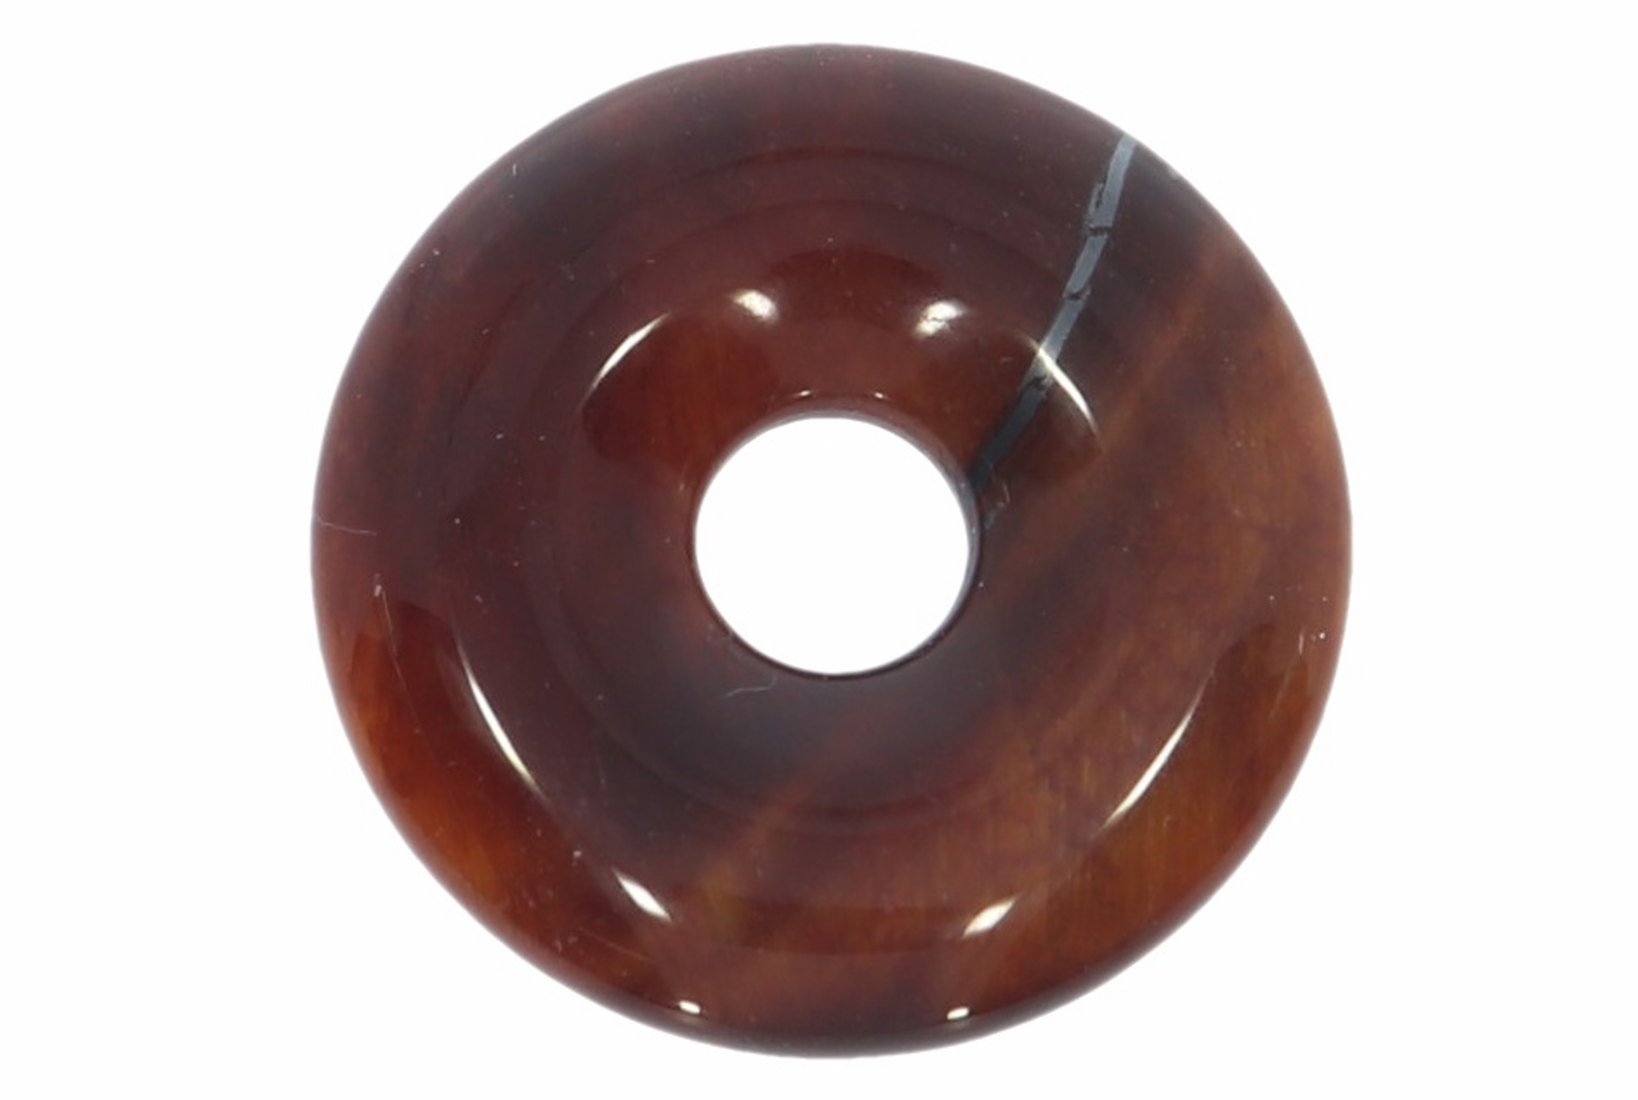 Tigerauge rot Donut Schmuck Anhänger 20mm für's Lederband HS1597